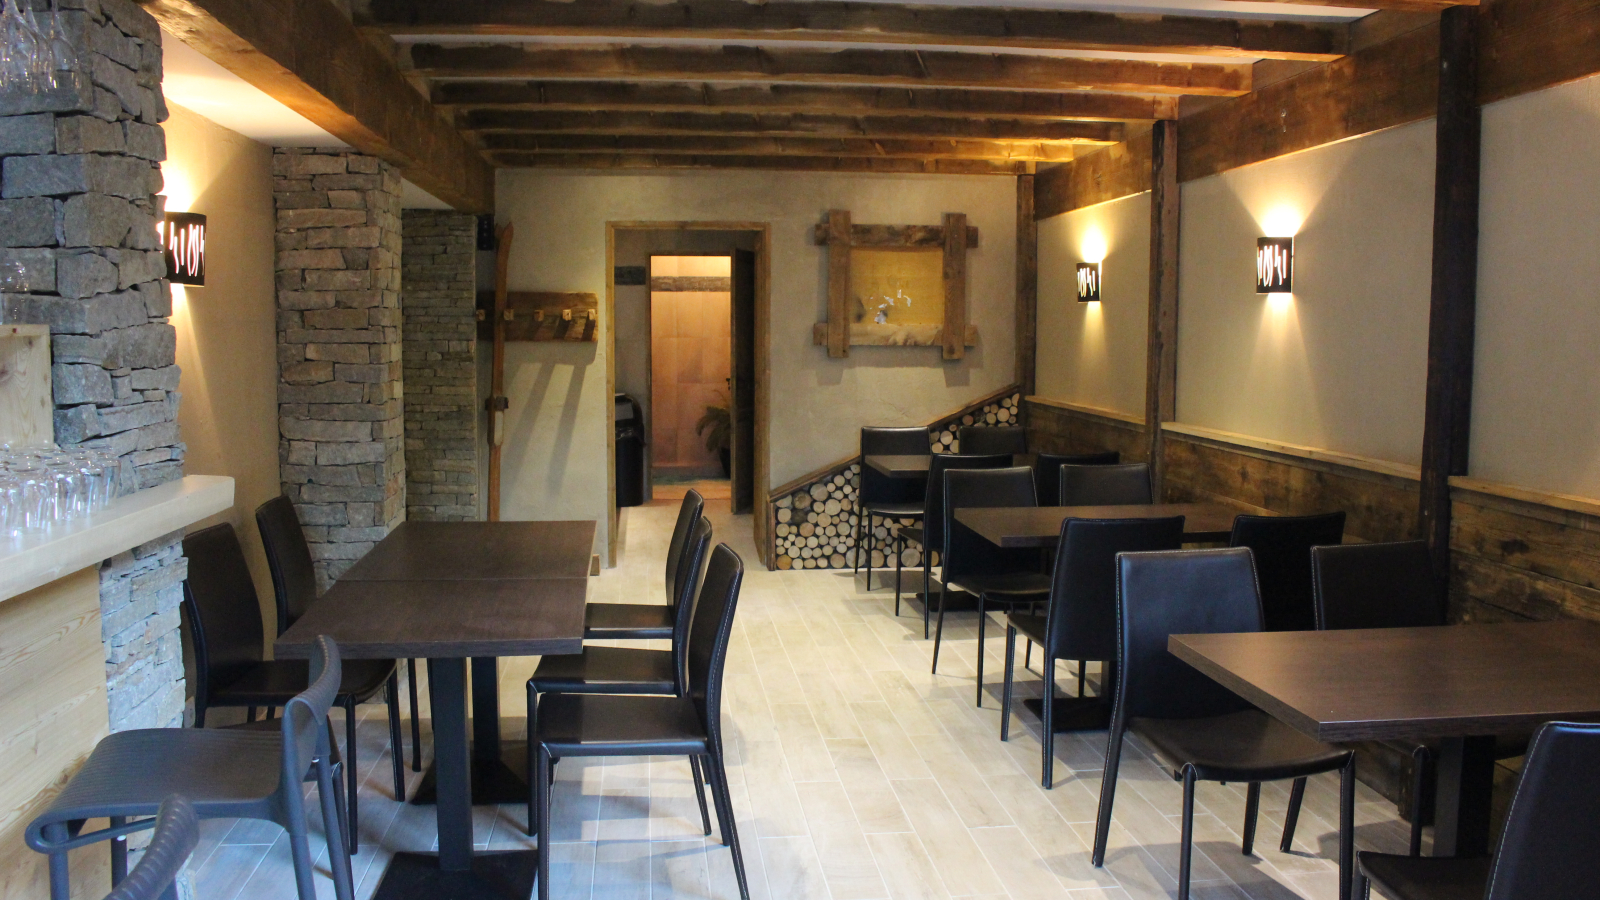 The C2, bar-restaurant & après-ski in Val Cenis-Lanslebourg